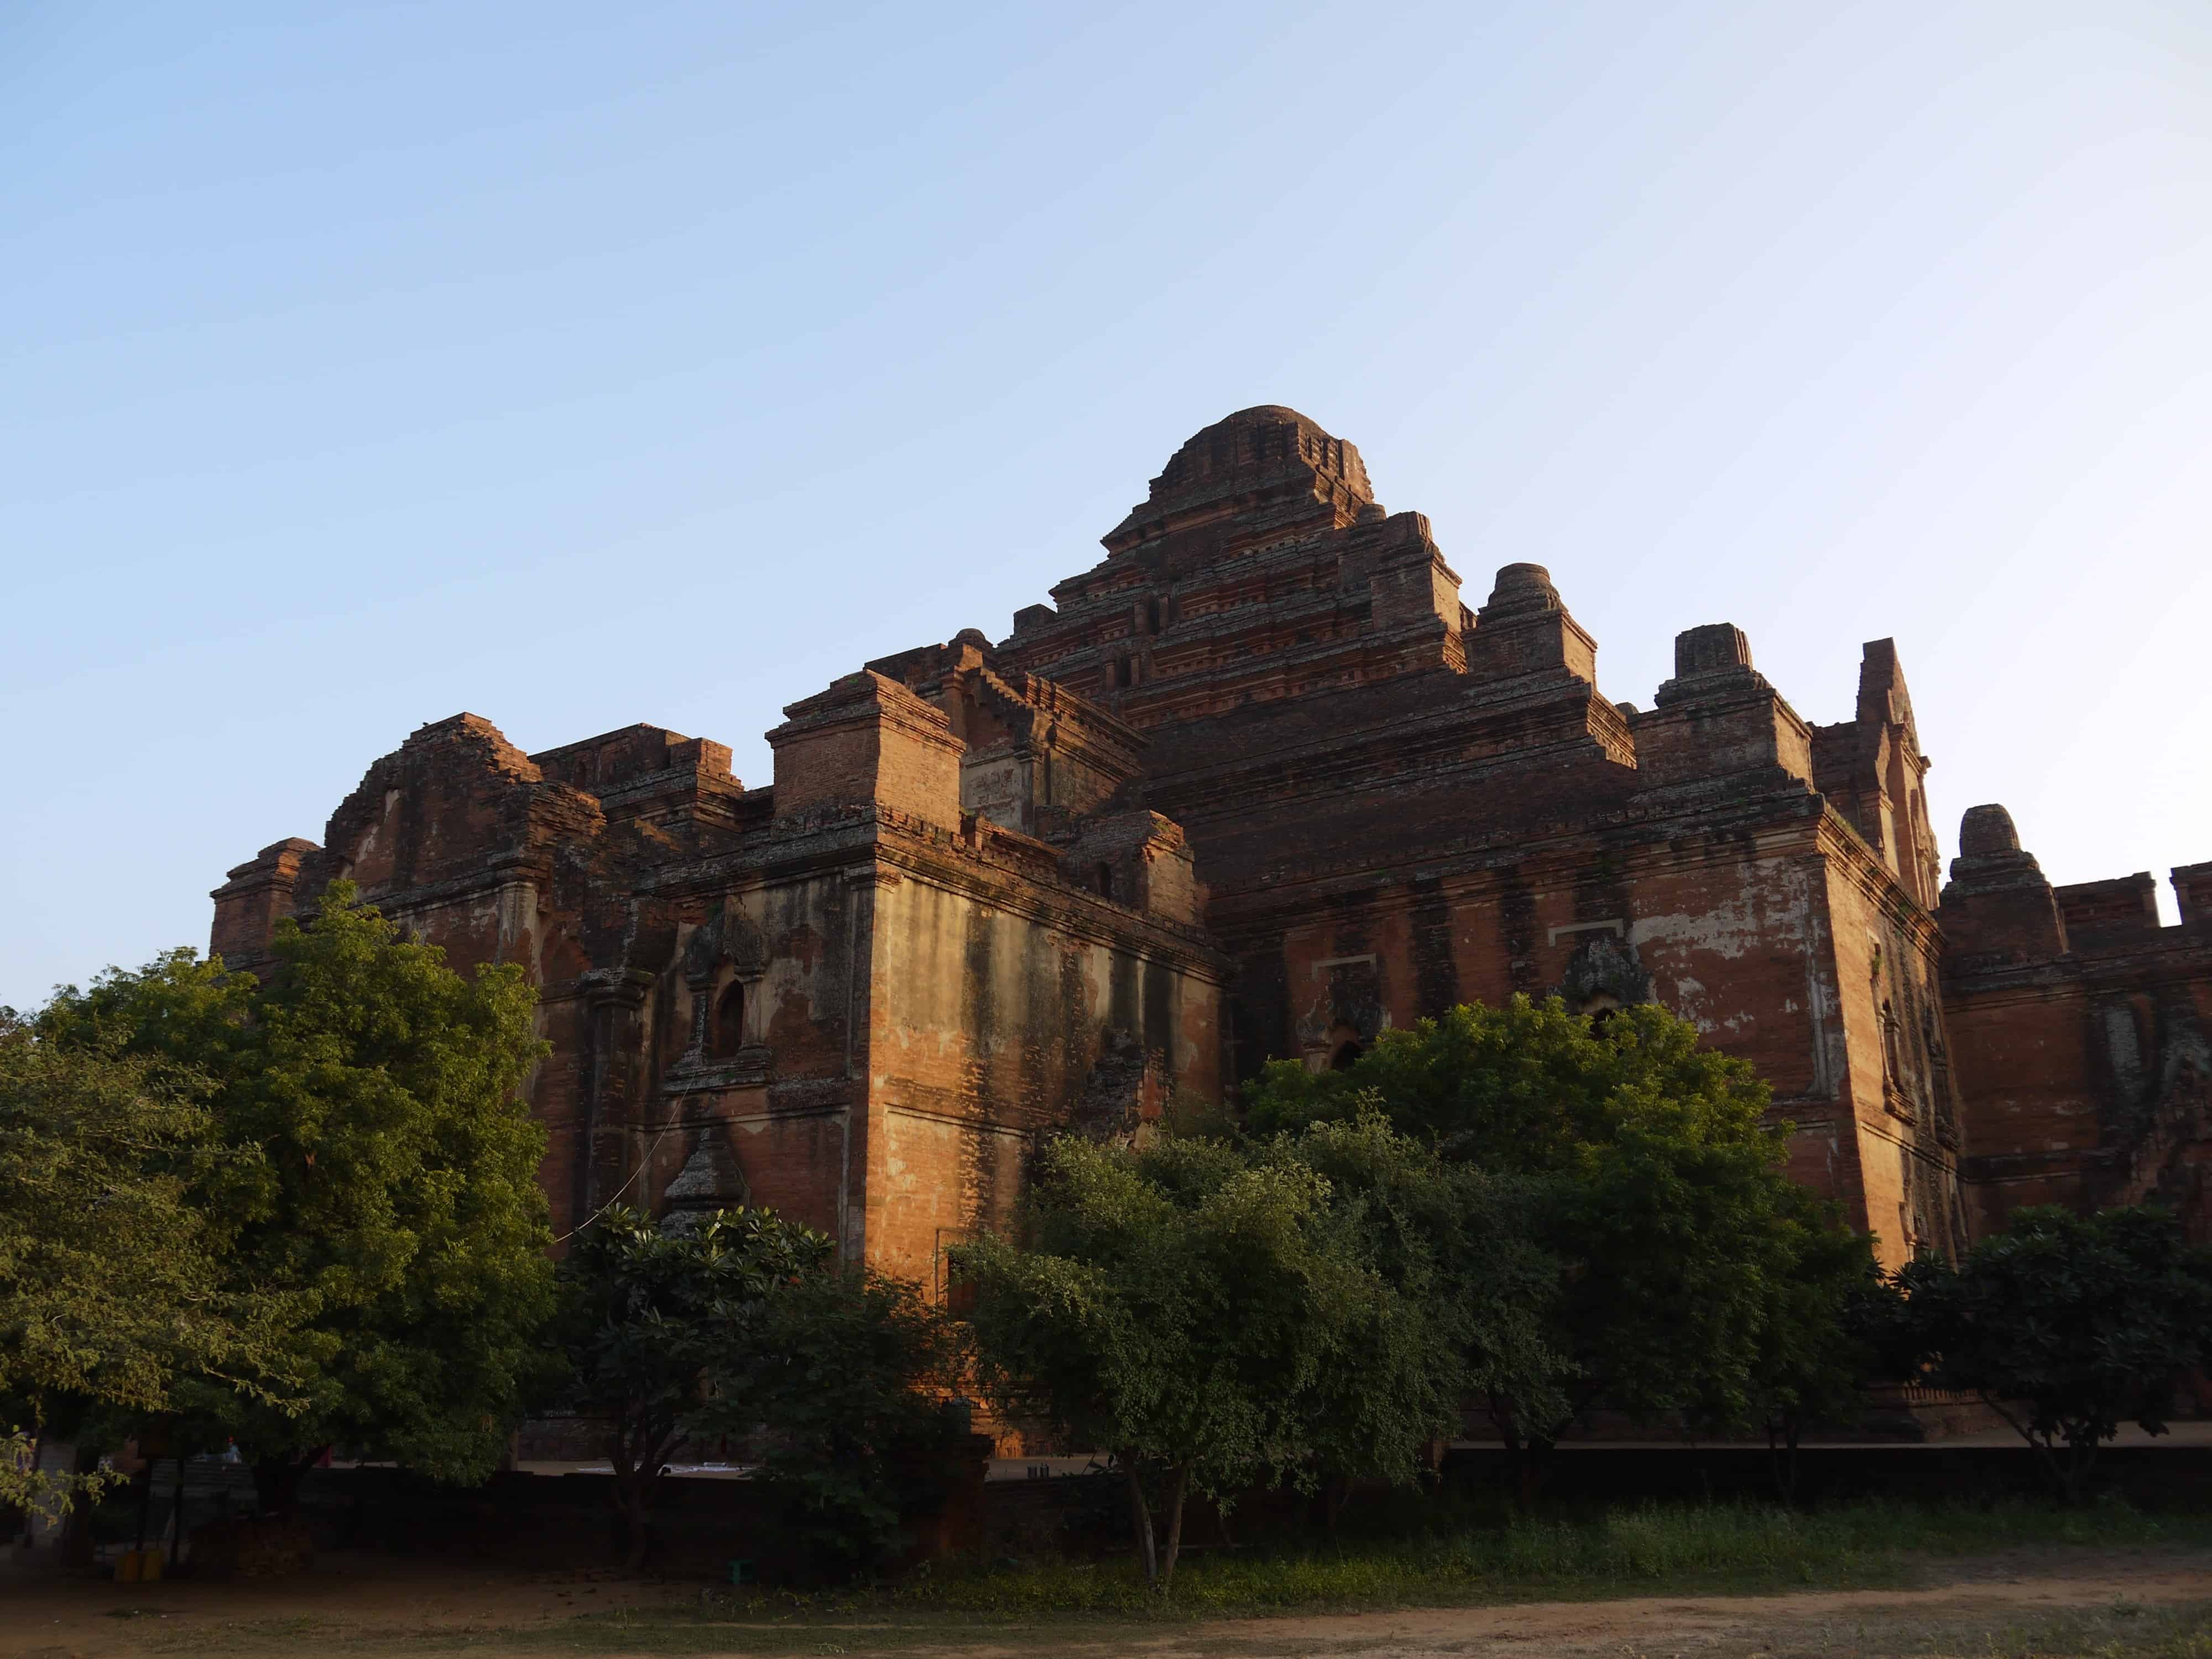 Dhammayangyi Temple in Bagan